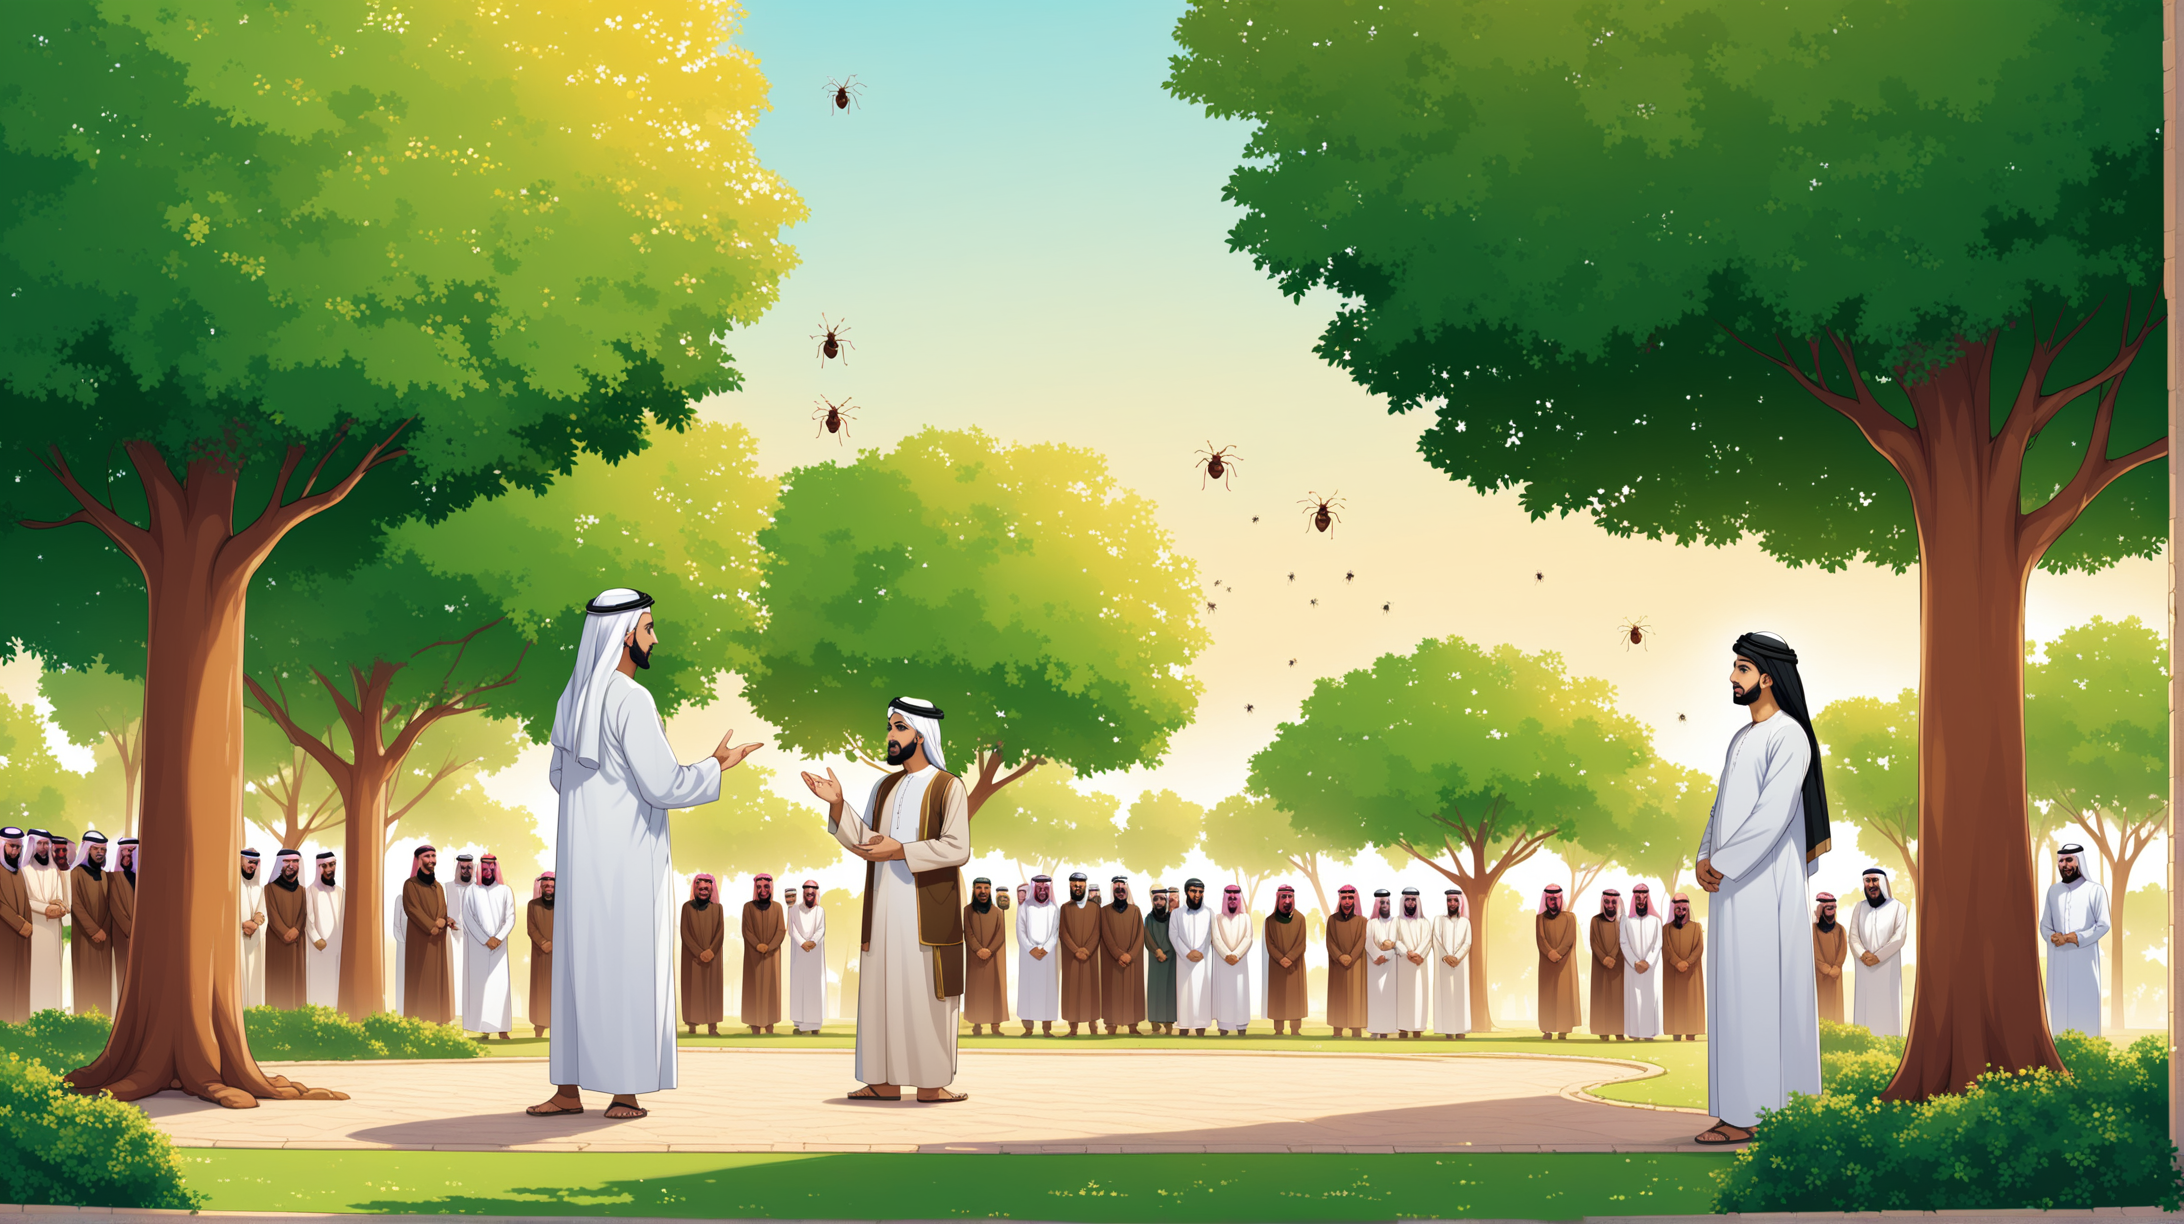 Arab Muslim Explaining in Lush Garden Setting